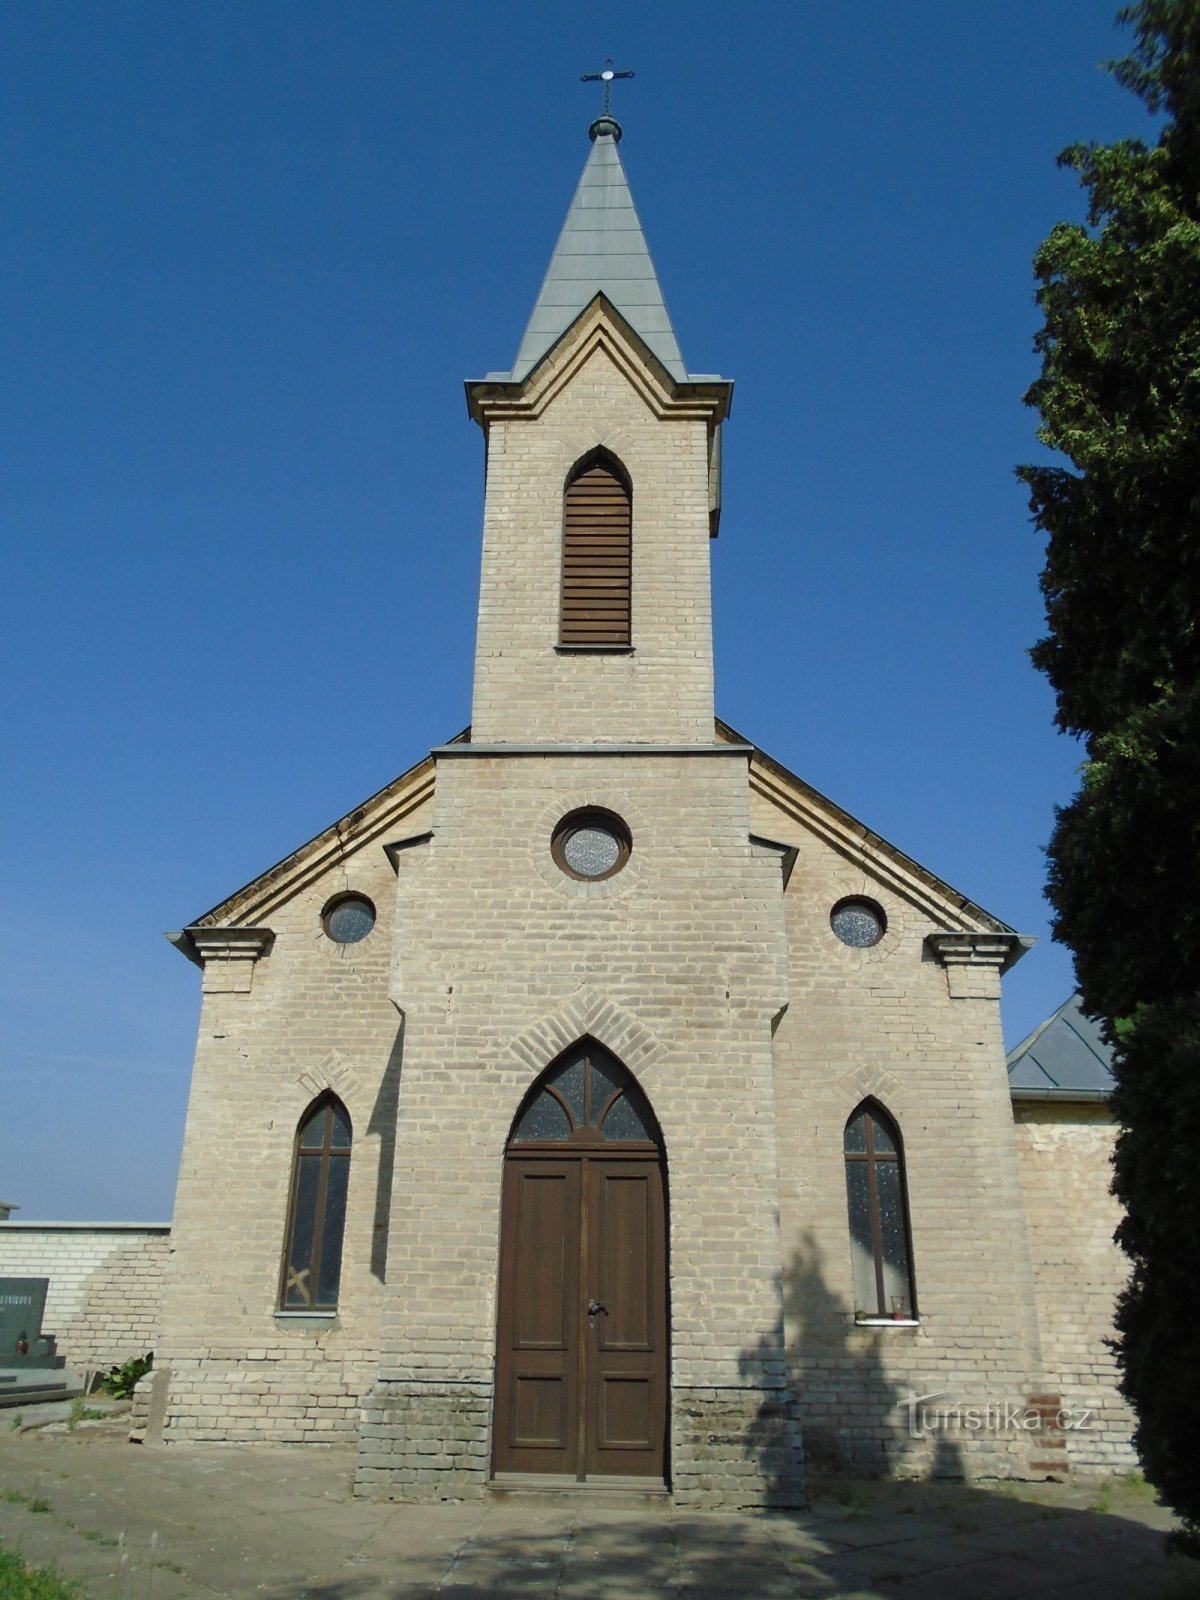 Kaplica Cmentarna Zmartwychwstania Pańskiego (Sedlice)